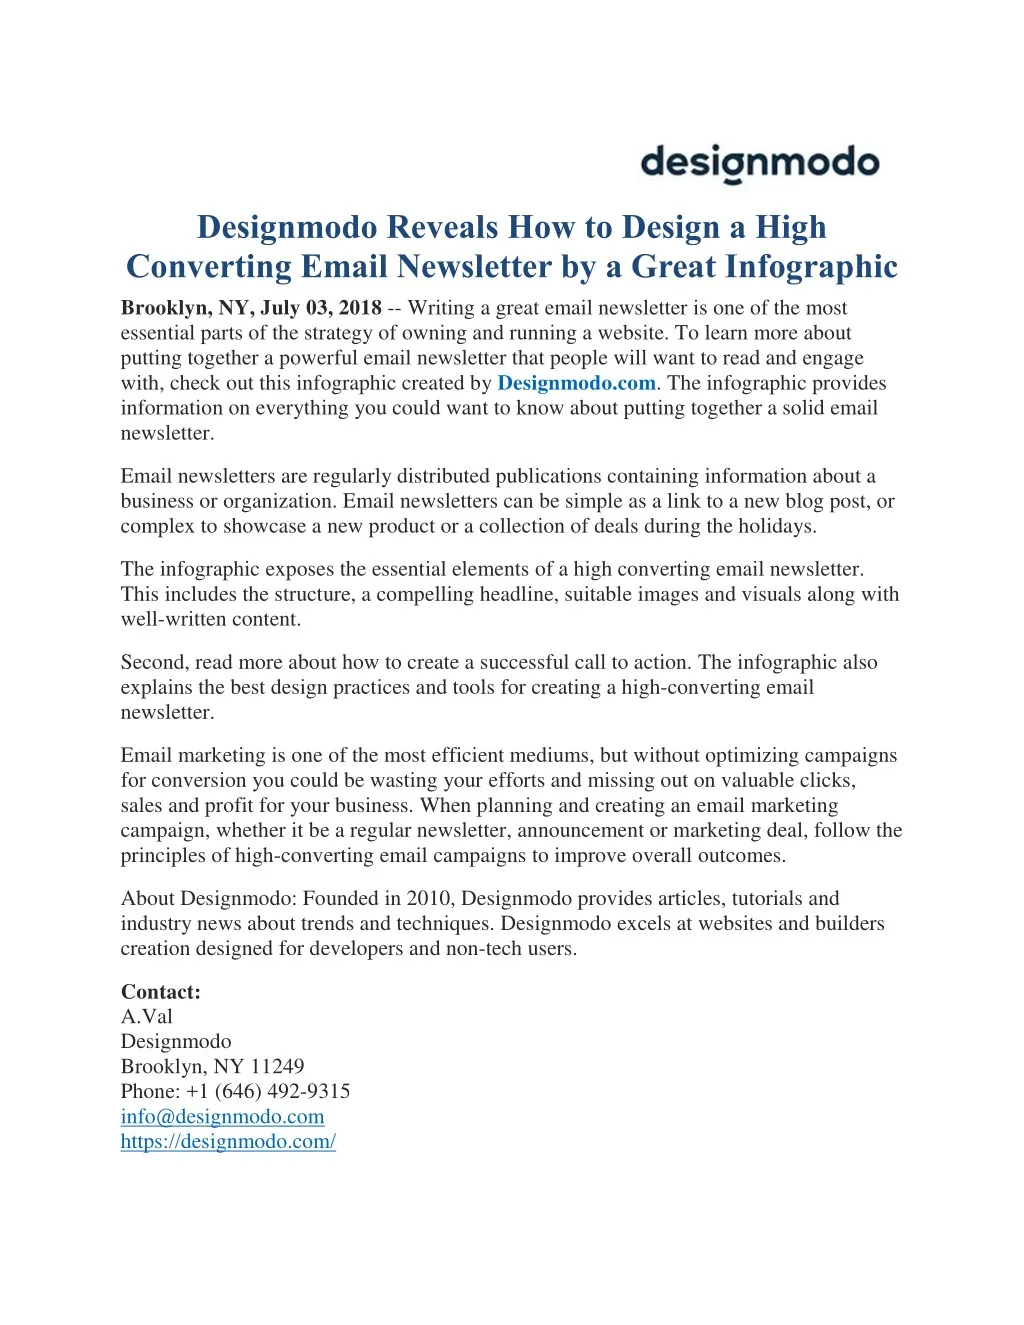 designmodo reveals how to design a high